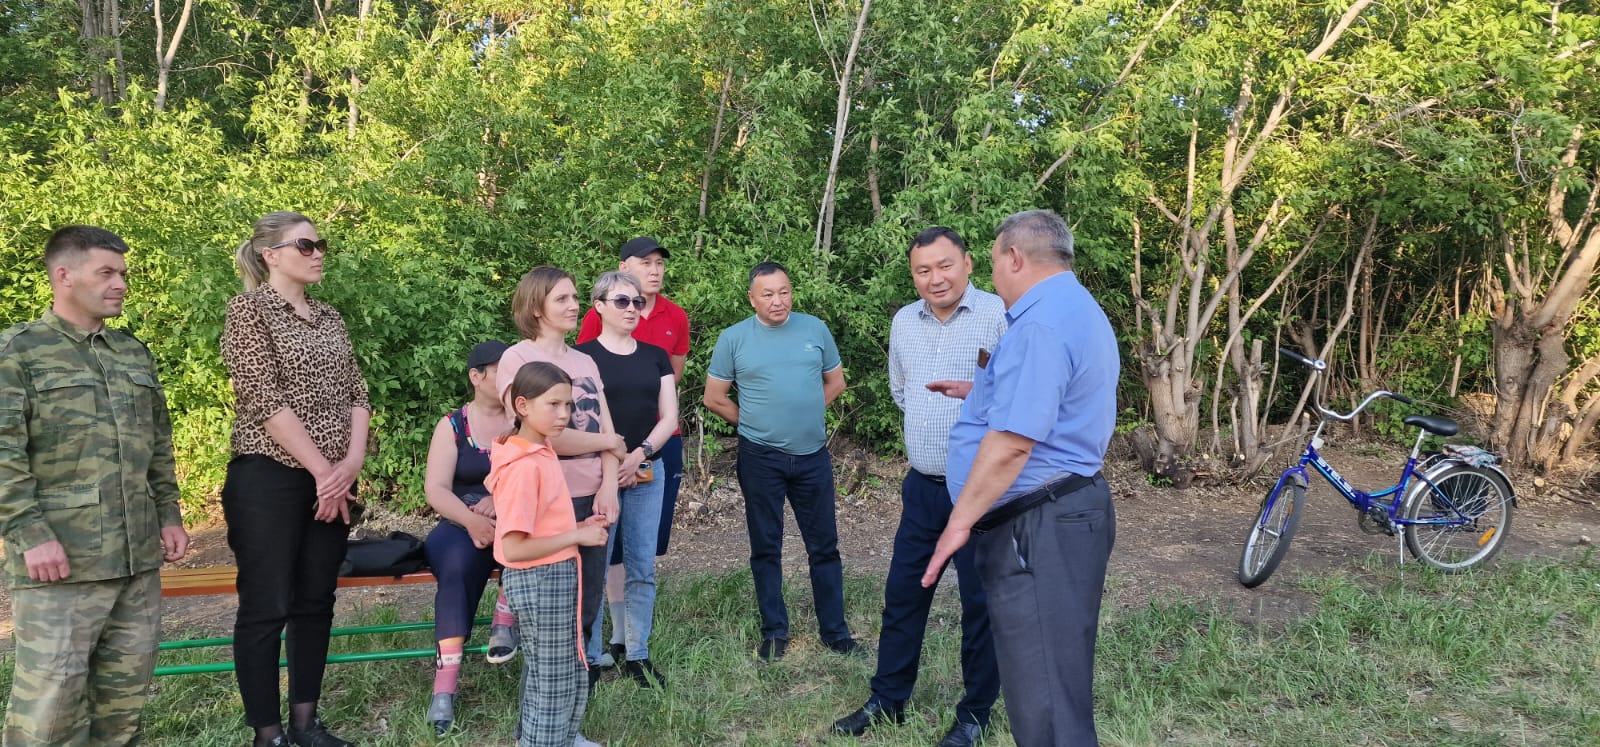 Новые детские площадки открыли в Кызылжарском районе 1 июня